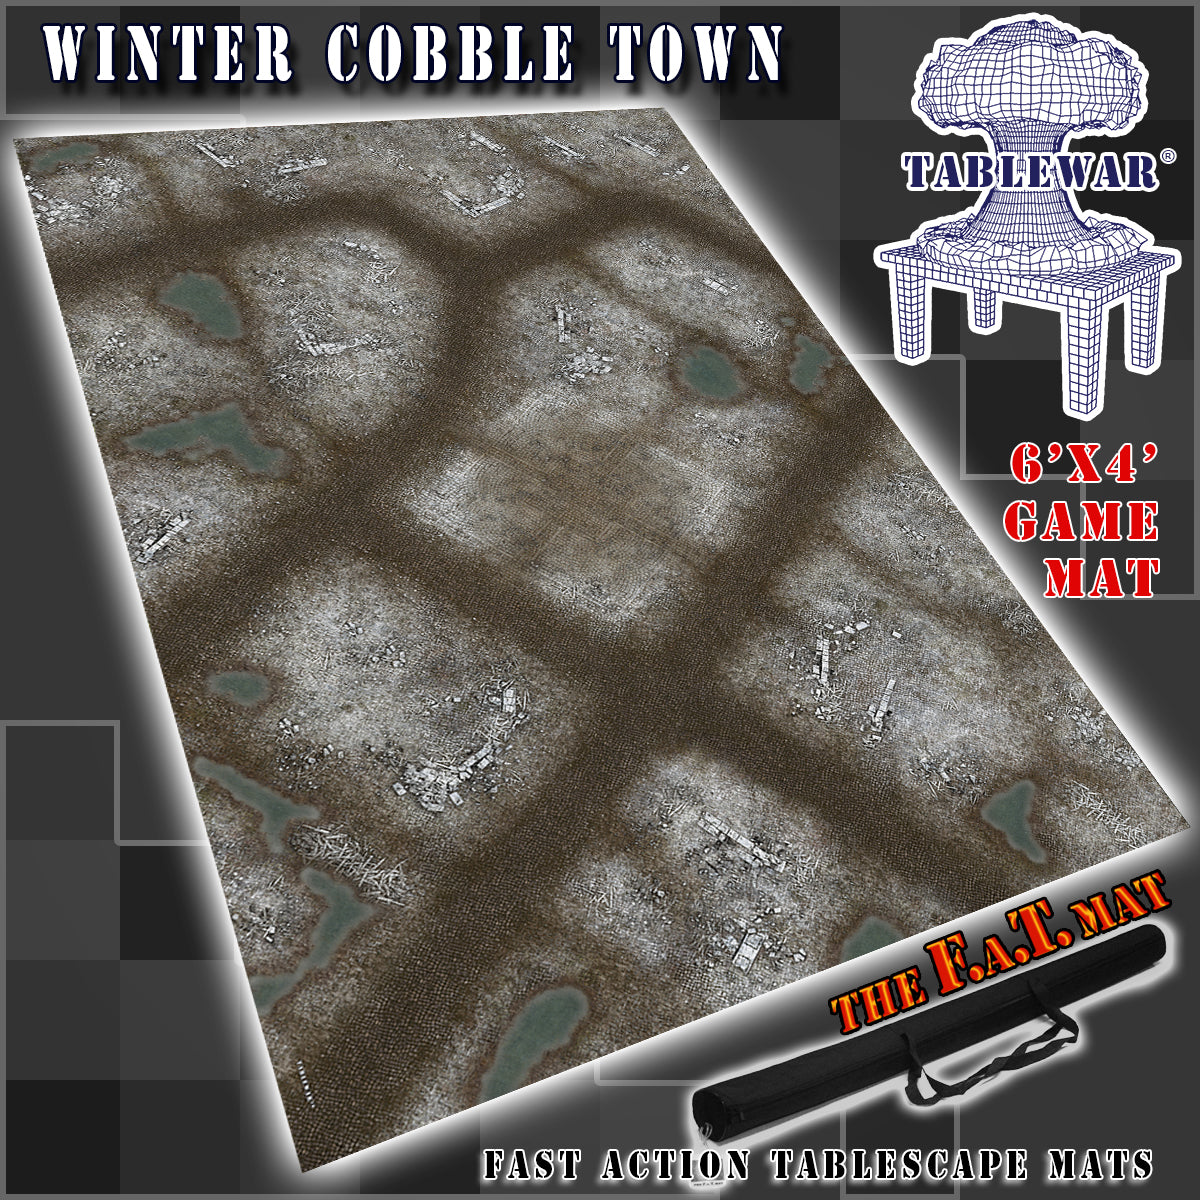 6x4 'Winter Cobble Town' F.A.T. Mat Gaming Mat – TABLEWAR®